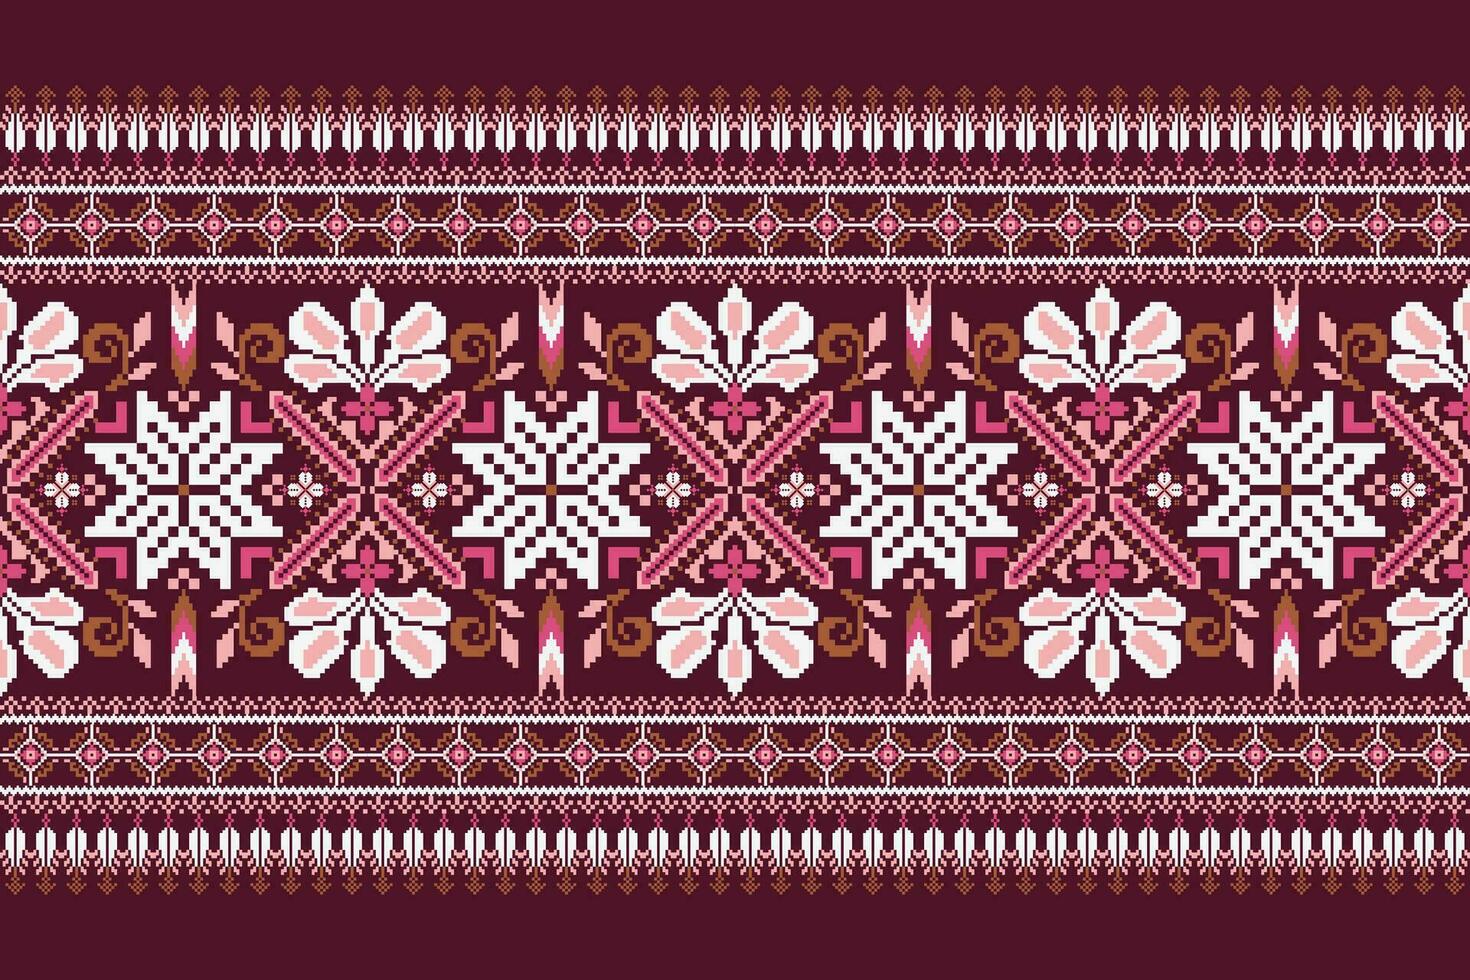 floreale attraversare punto ricamo su viola sfondo.geometrico etnico orientale modello tradizionale.azteco stile astratto vettore illustrazione.disegno per trama, tessuto, abbigliamento, avvolgimento, decorazione, sciarpa.